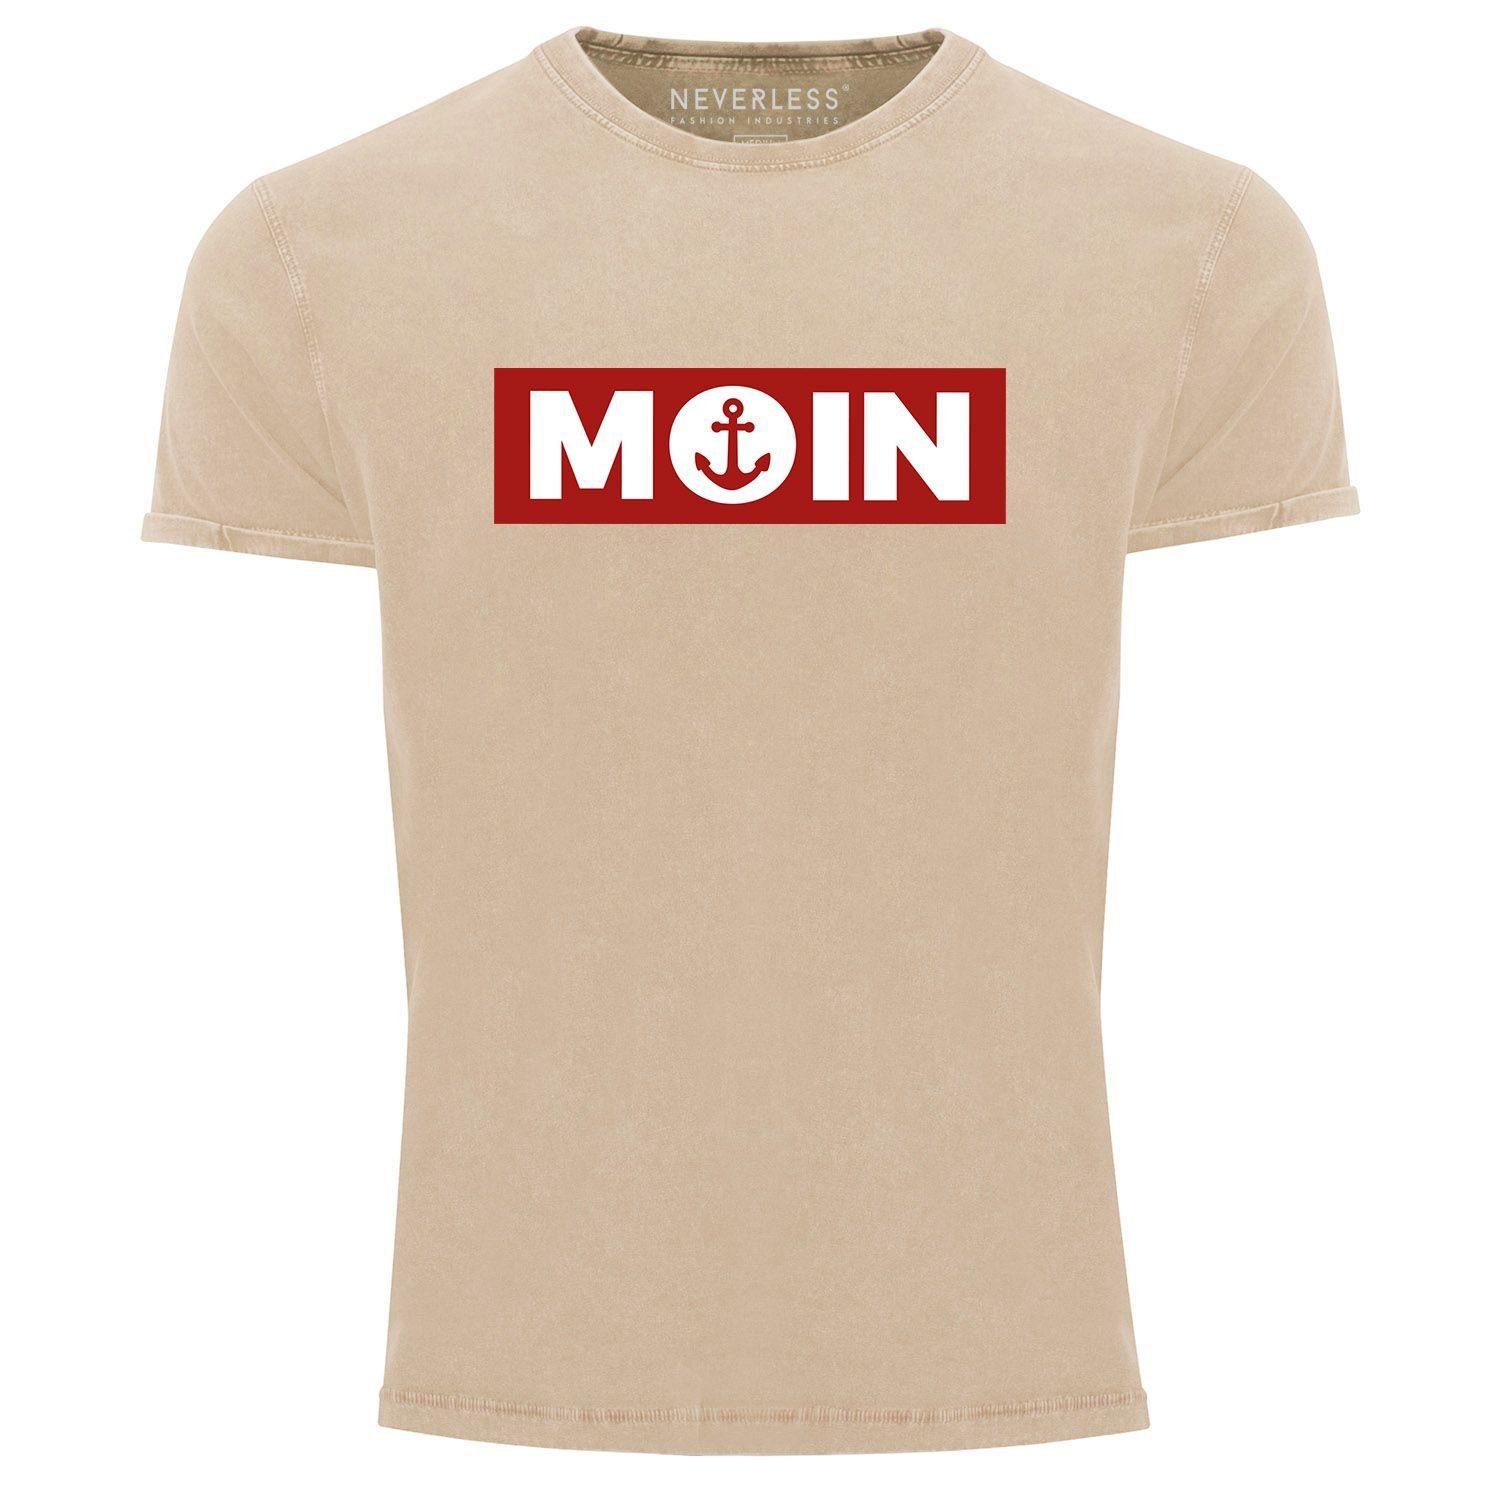 Fit Print Print-Shirt Neverless norddeutsch Printshirt T-Shirt natur Anker Moin Herren Neverless® Morgen Used Shirt mit Look Slim Aufdruck Vintage